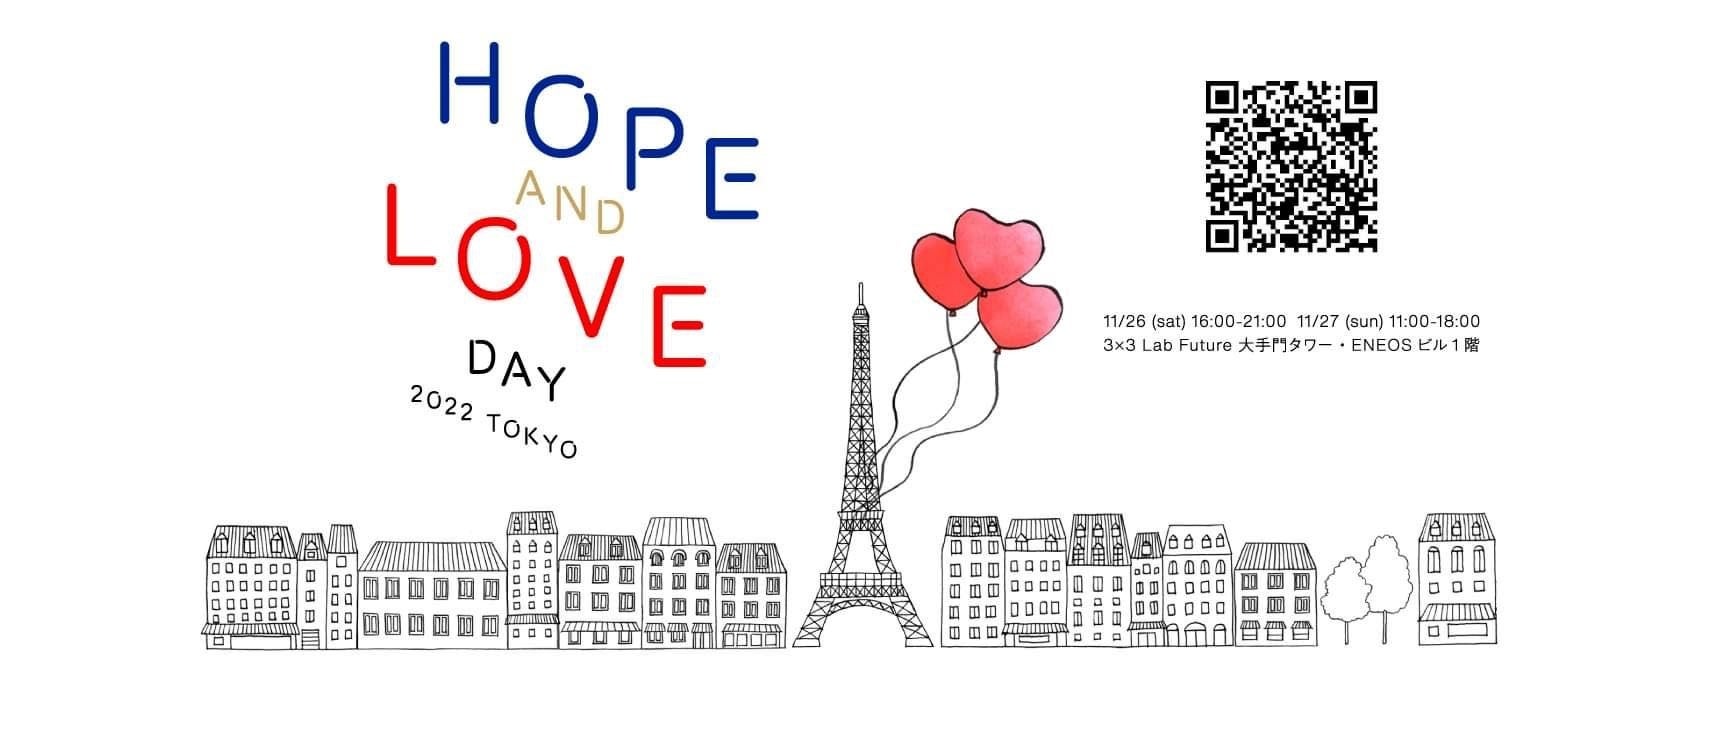 11月27日(日)開催のパリ仕込みのチャリティーイベント「Hope and Love Day」に参加